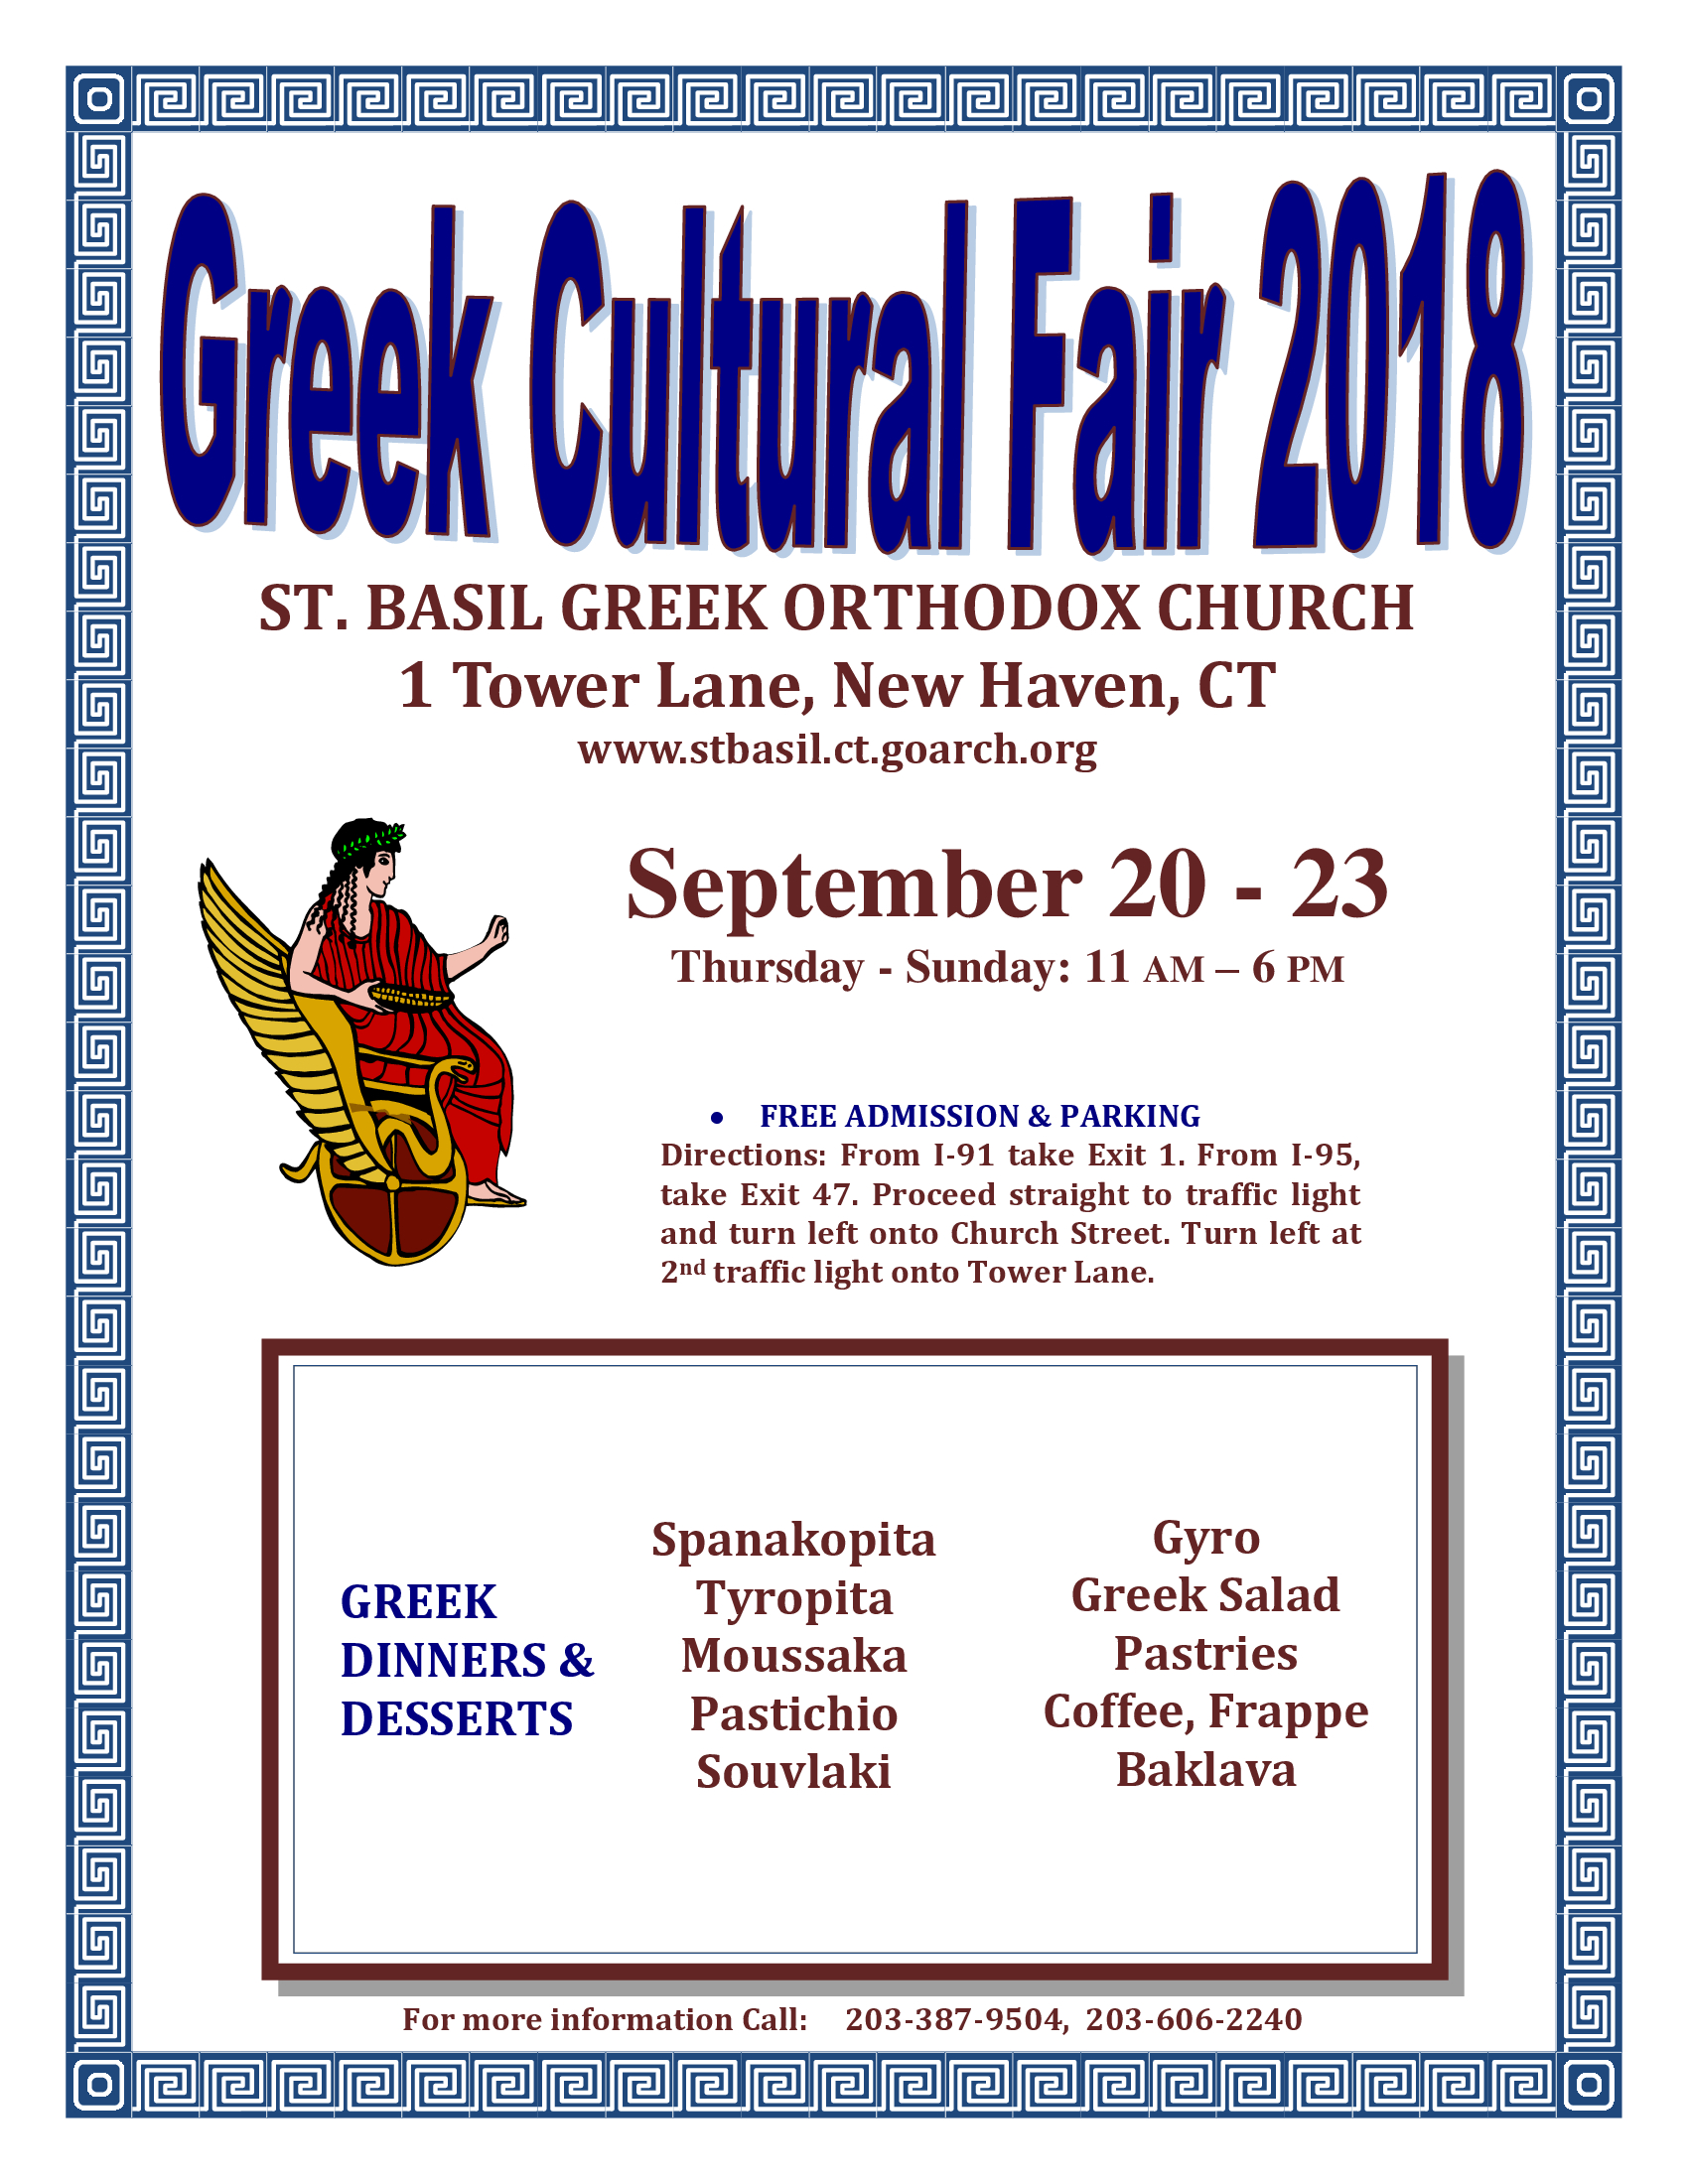 Greek Cultural Fair Festival at St. Basil Greek Church New Haven CT